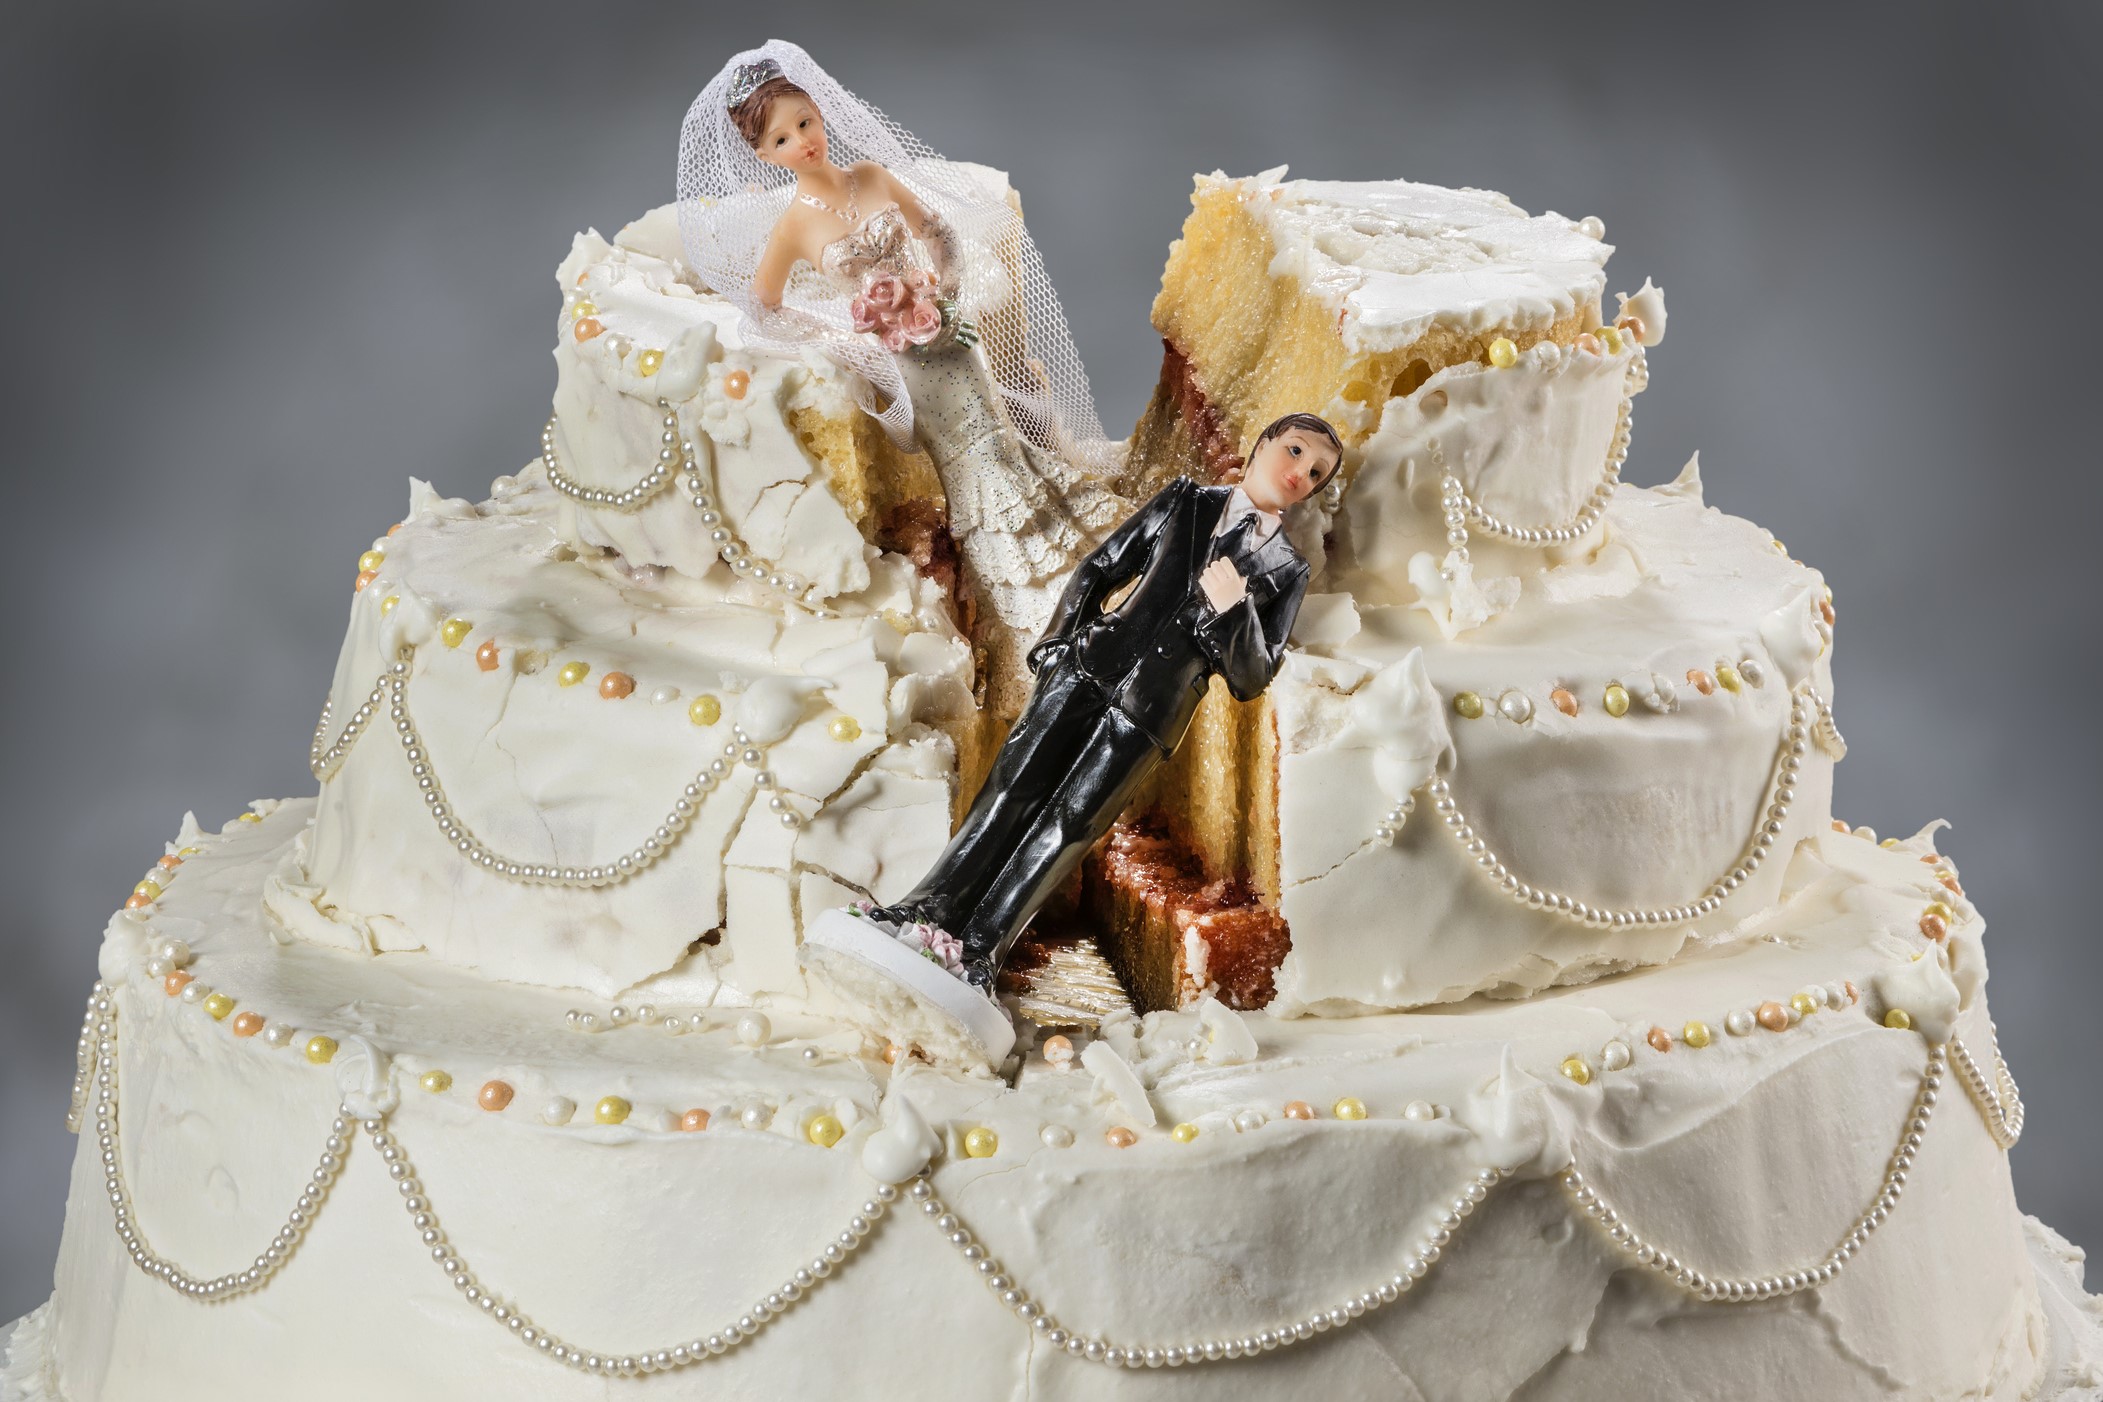 Elvált nők házasság hazugság